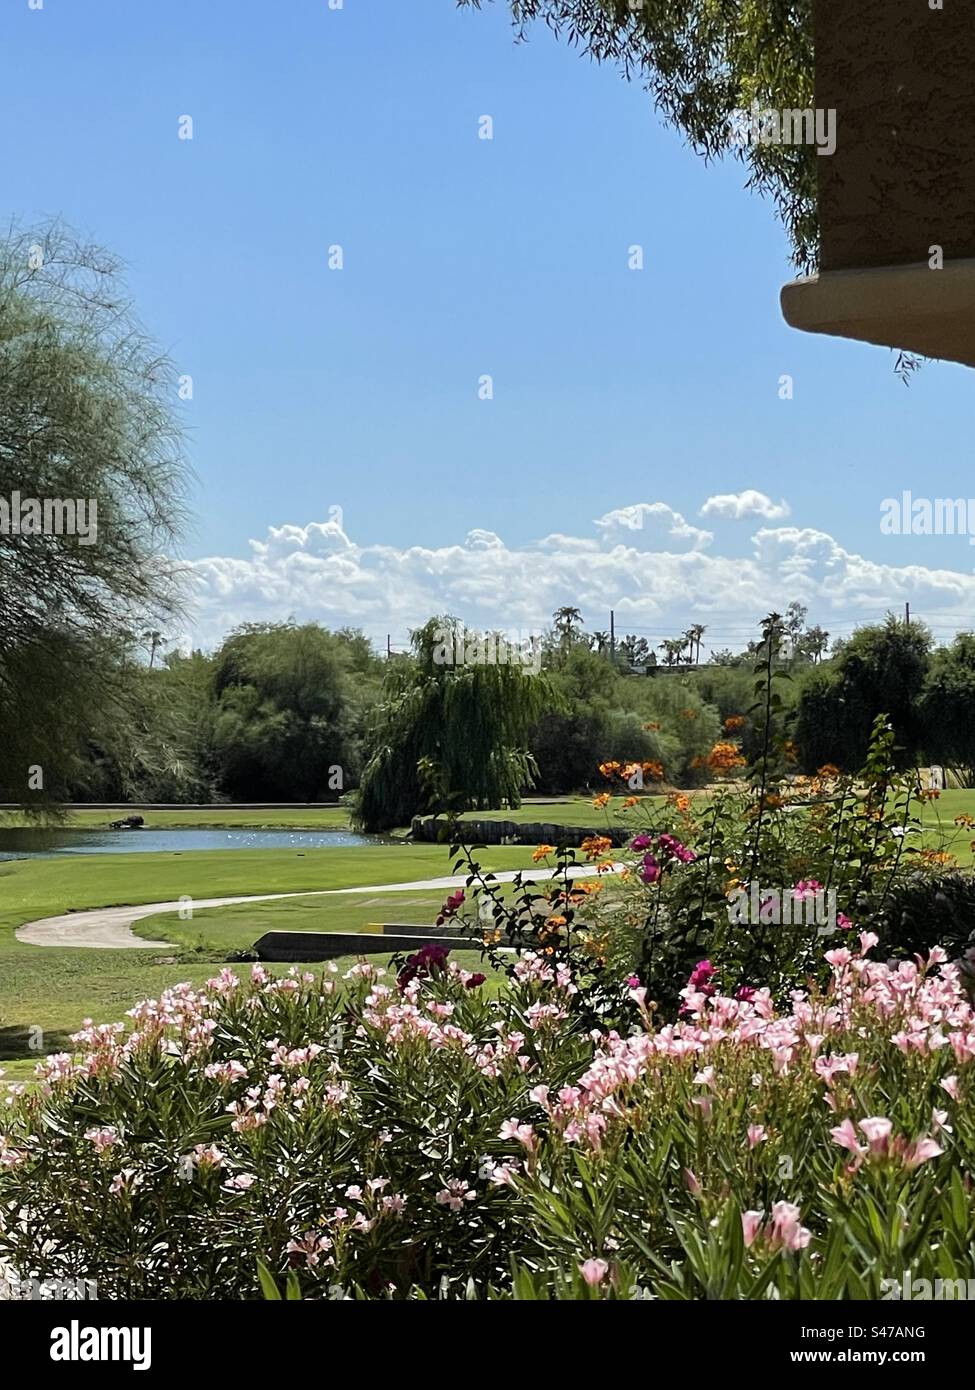 Graziose curve, percorso per golf cart incorniciato da oleandri rosa, cespugli Orange Paradise, fucsia Bougainville, cieli azzurri, nuvole basse, stagno, salici, Scottsdale, Arizona Foto Stock